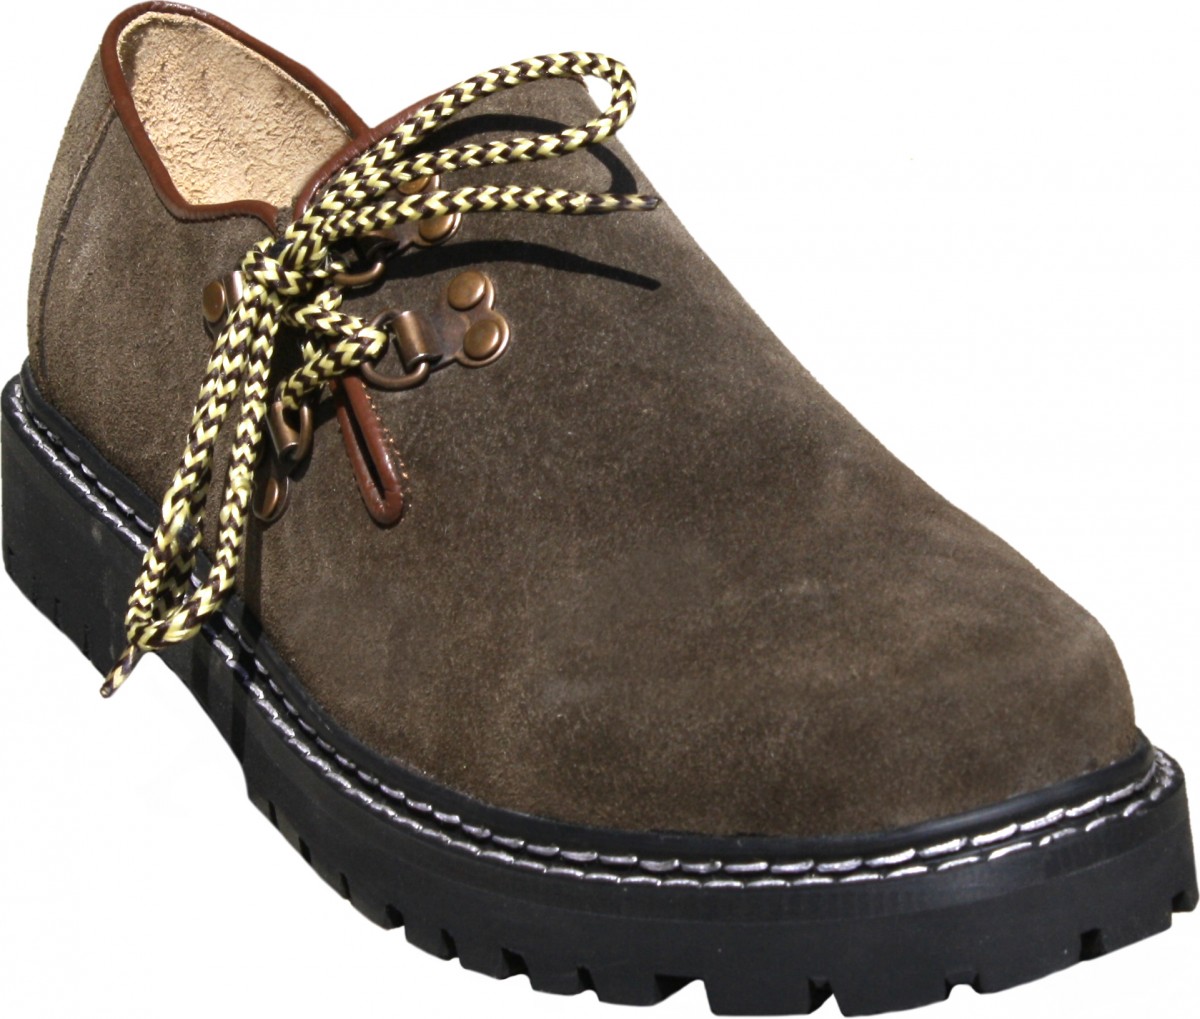 Bavarian Haferl for Lederhosen Shoes Suede leather oktoberfest,color:Brown